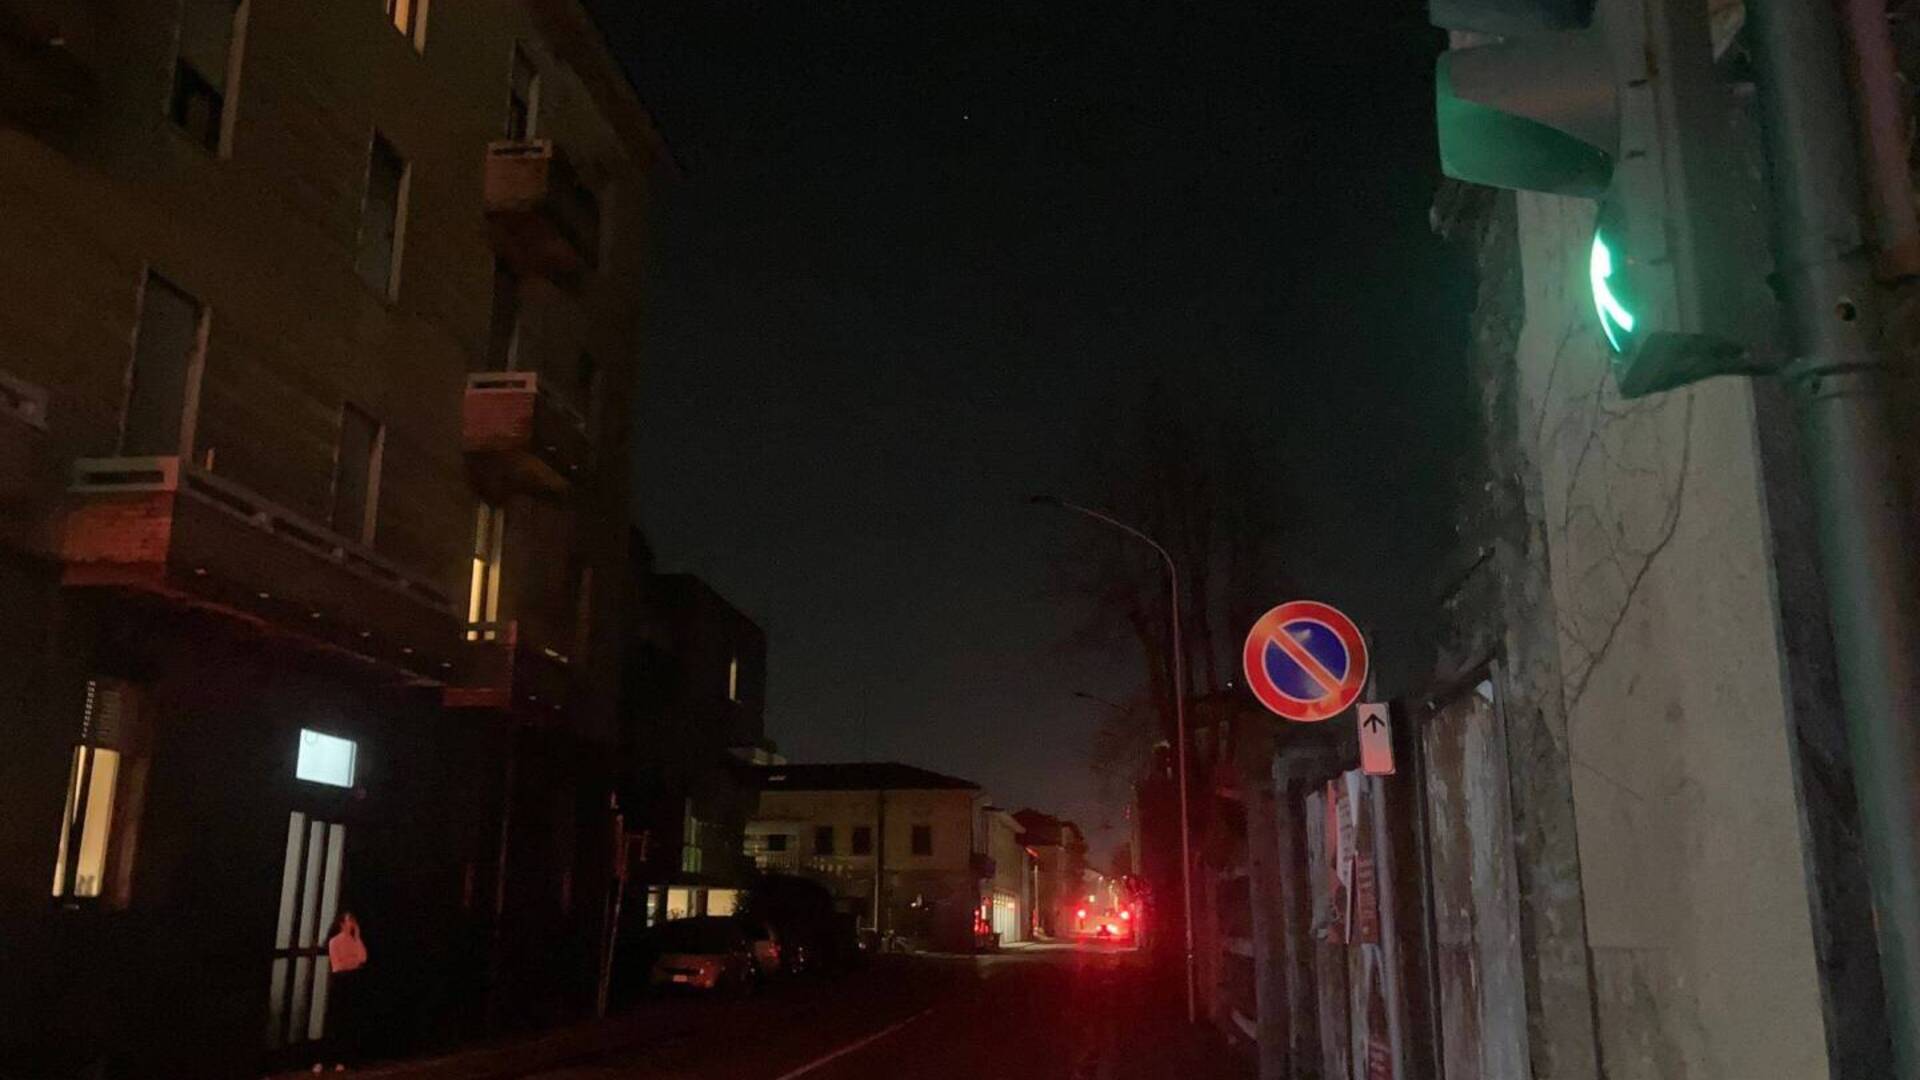 Saronno, illuminazione pubblica spenta: dopo via Volta tocca a via Volonterio